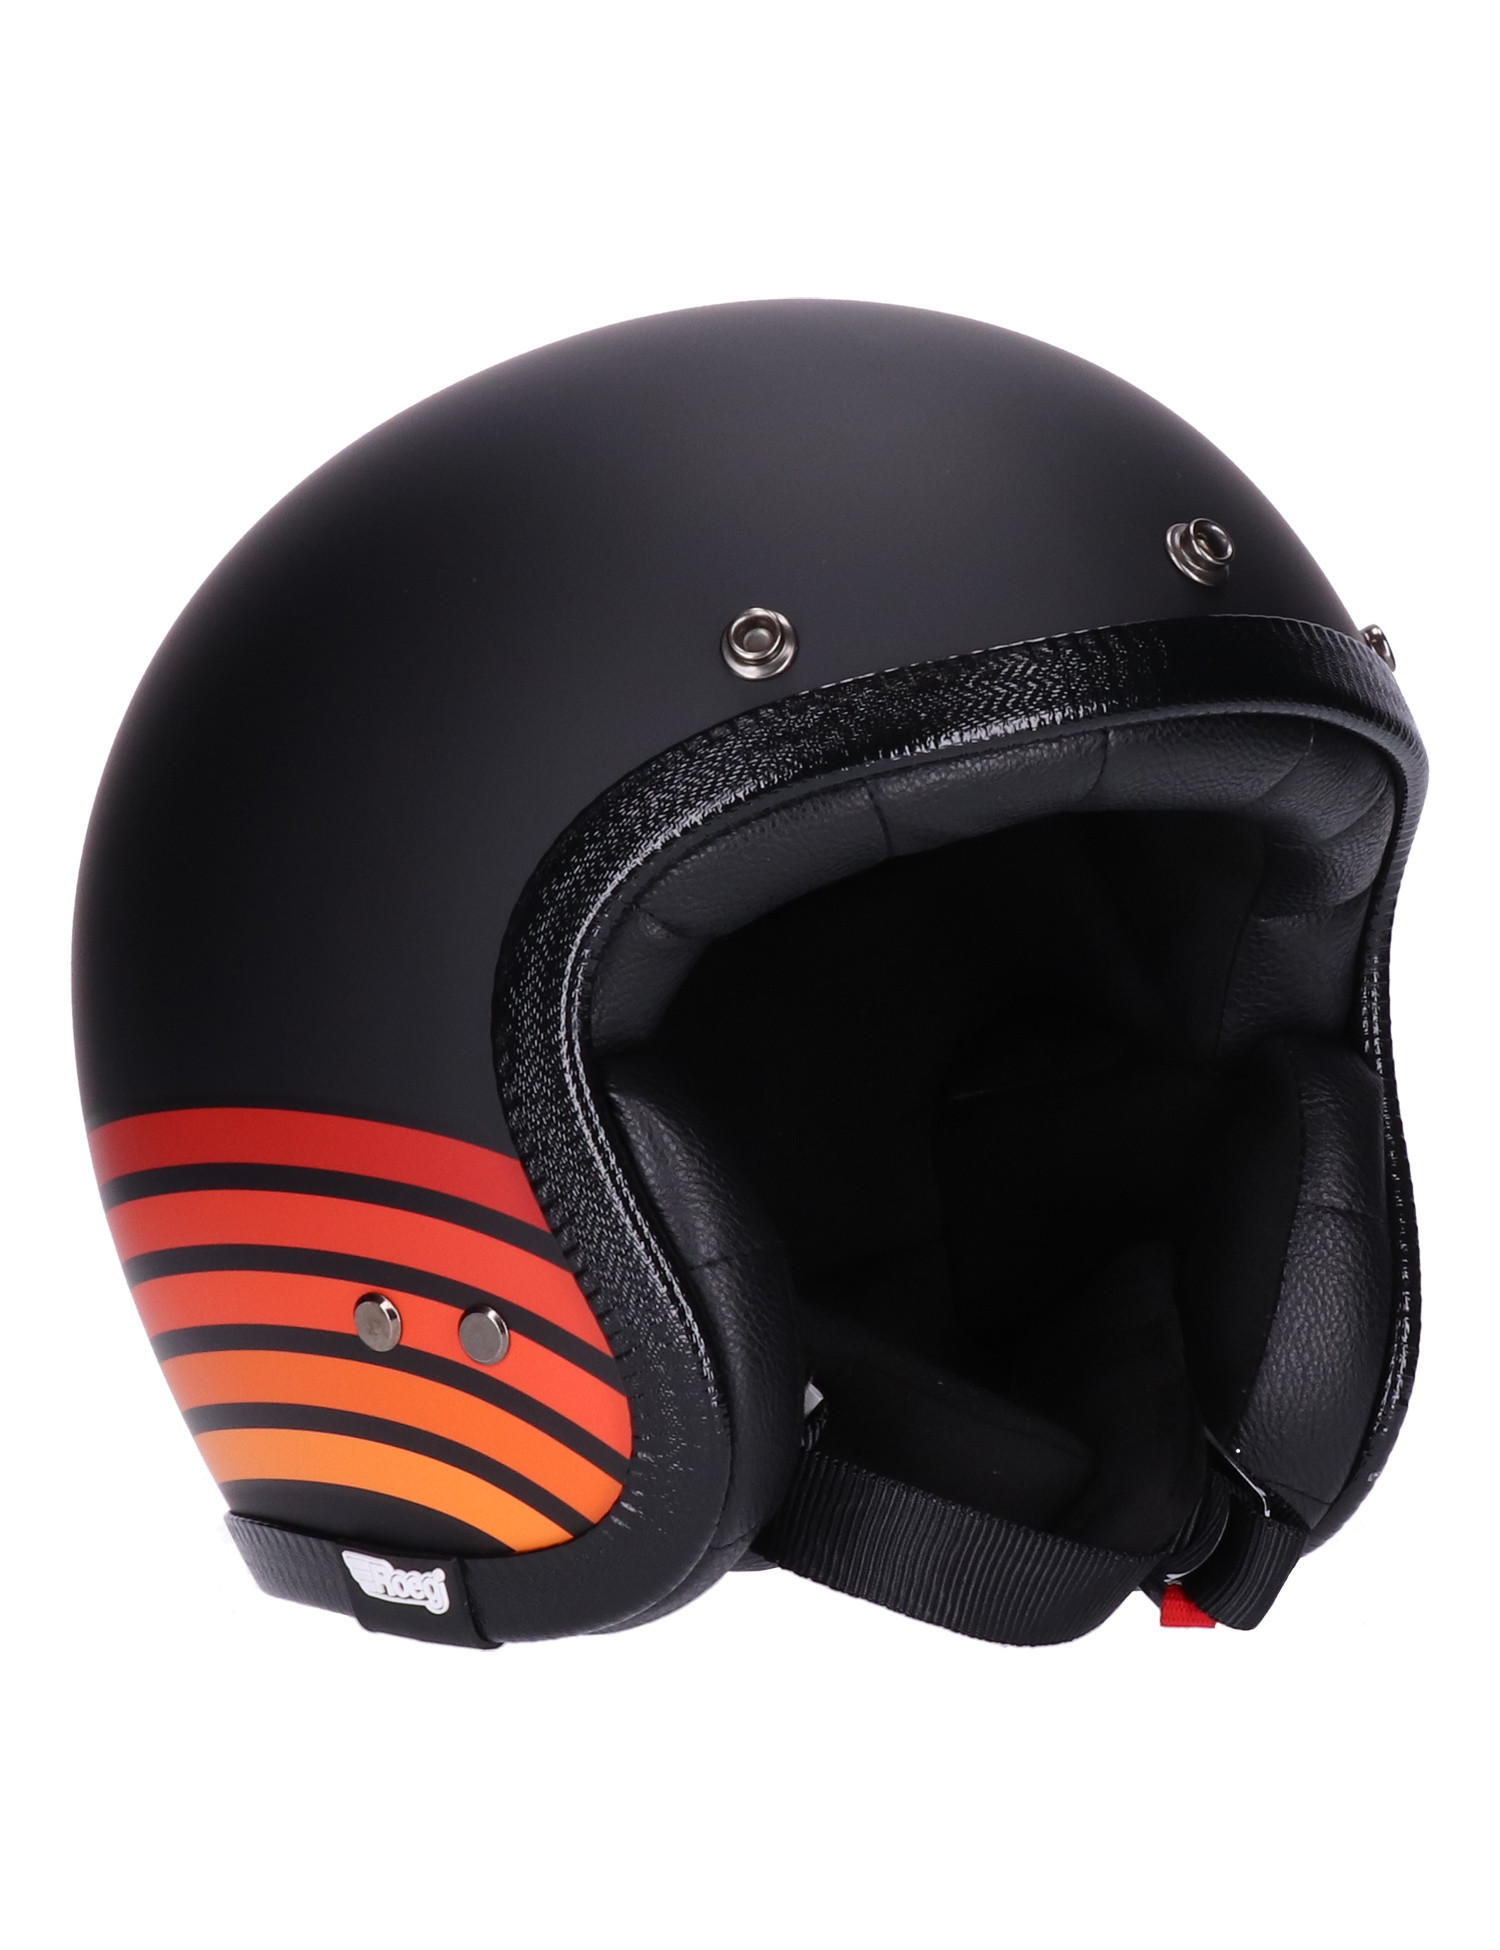 Roeg JETTson 2.0 Helmet Highway matte black